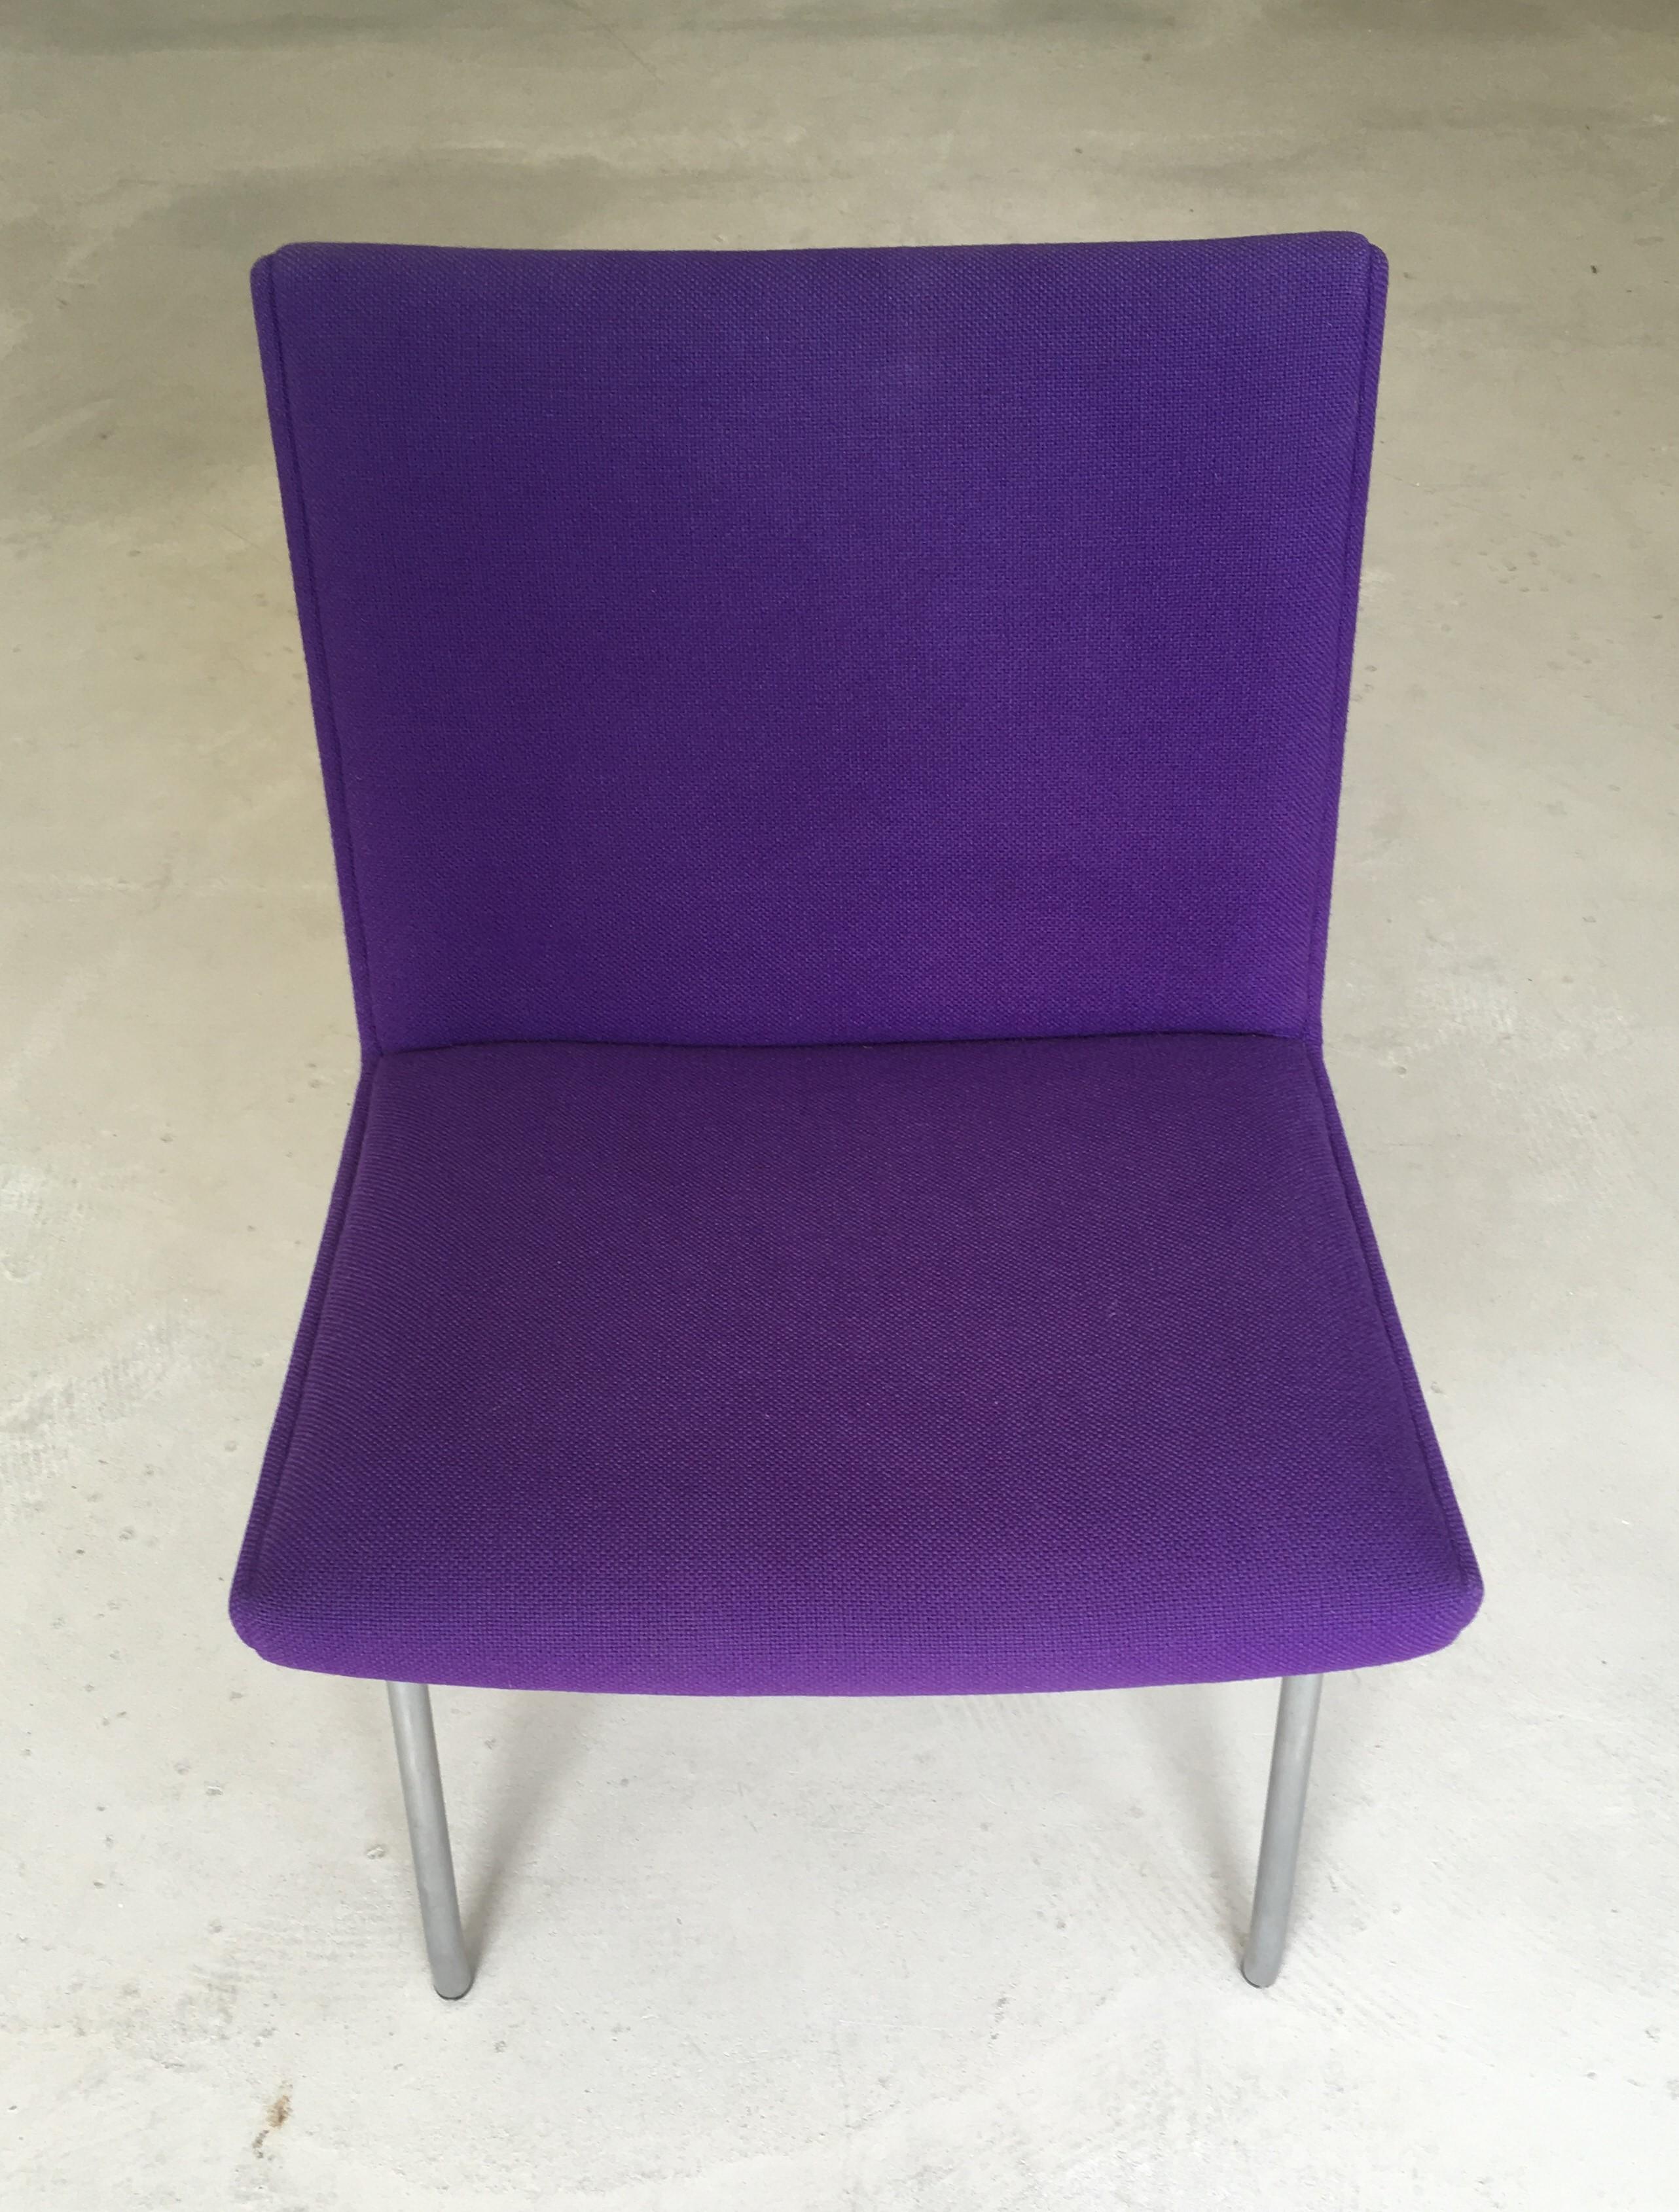 Fauteuil d'aéroport danois Hans J. Wegner par AP. Volé remeublé en tissu violet

Une chaise moderne exceptionnelle. De son temps, conçu en 1958, sur des cadres en acier tubulaire. Les sièges ont été retapissés avec du Kvadrat Hallingdal 65